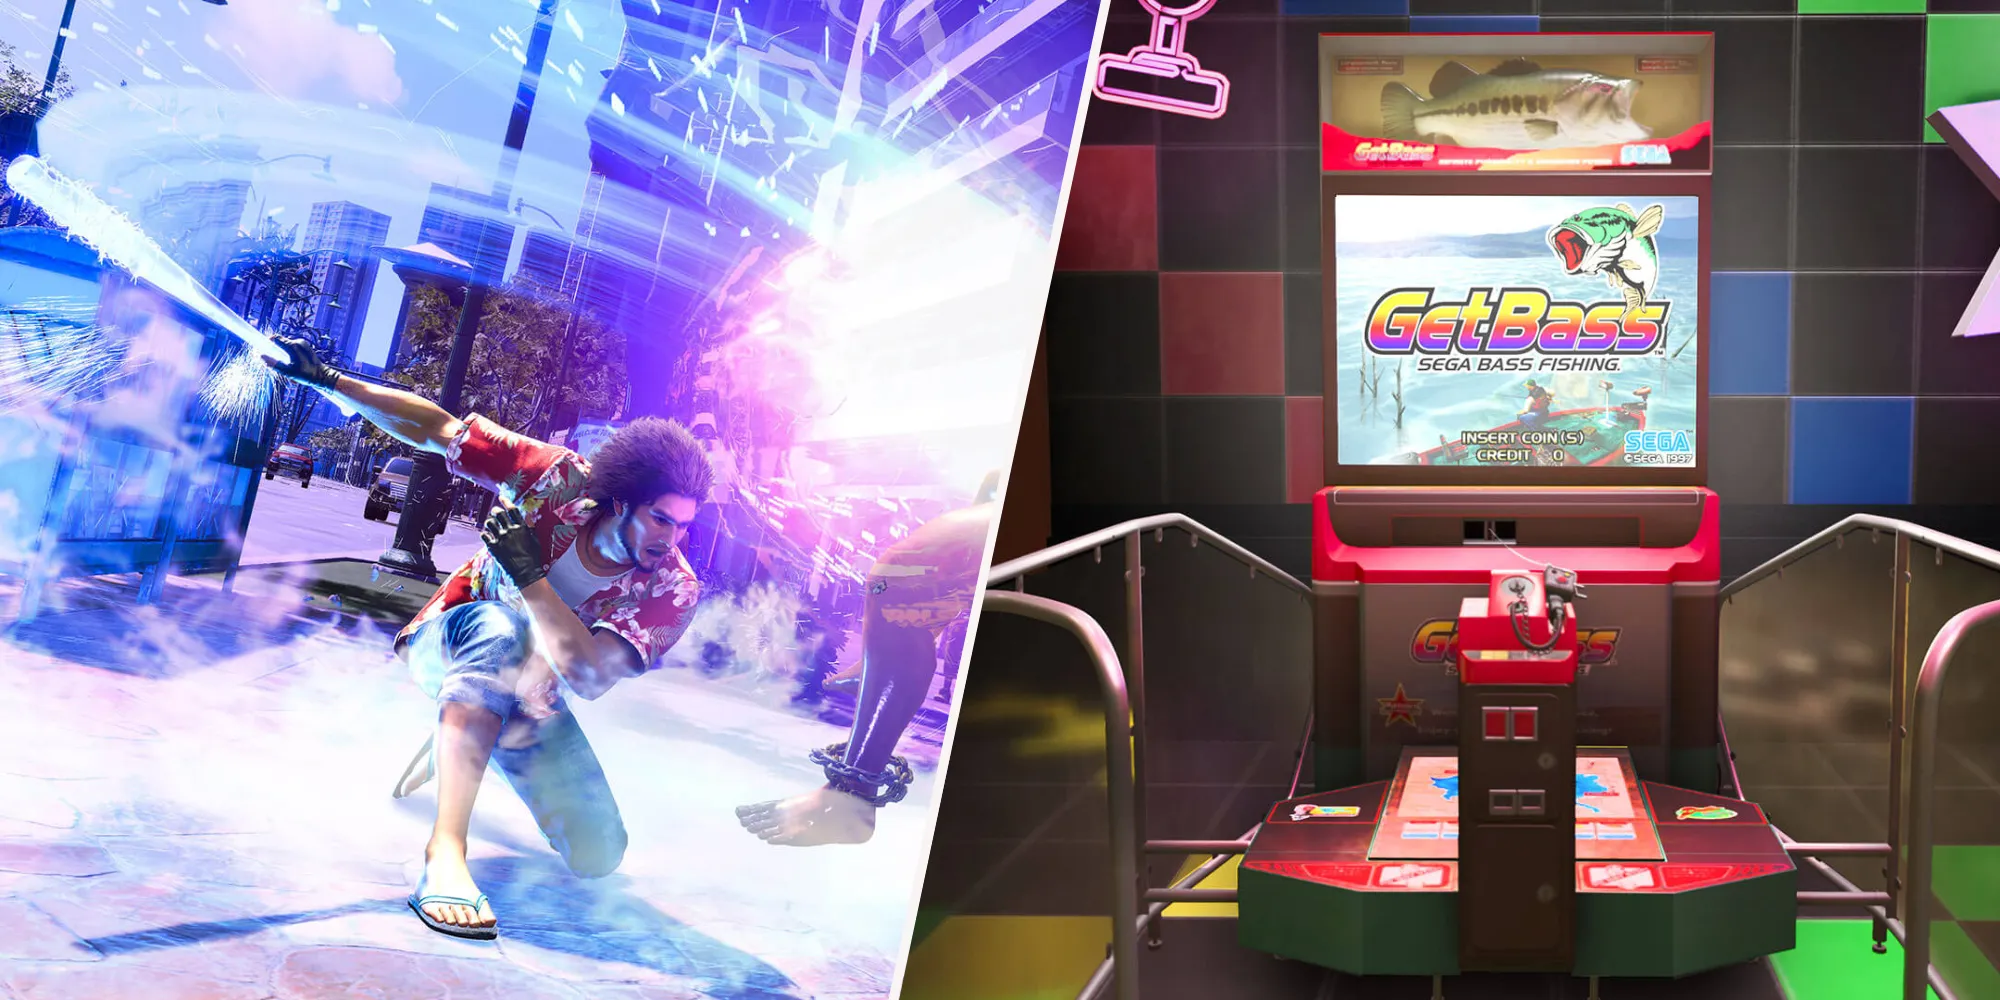 Kasuga en combat et une borne d'arcade de pêche Sega GetBass.